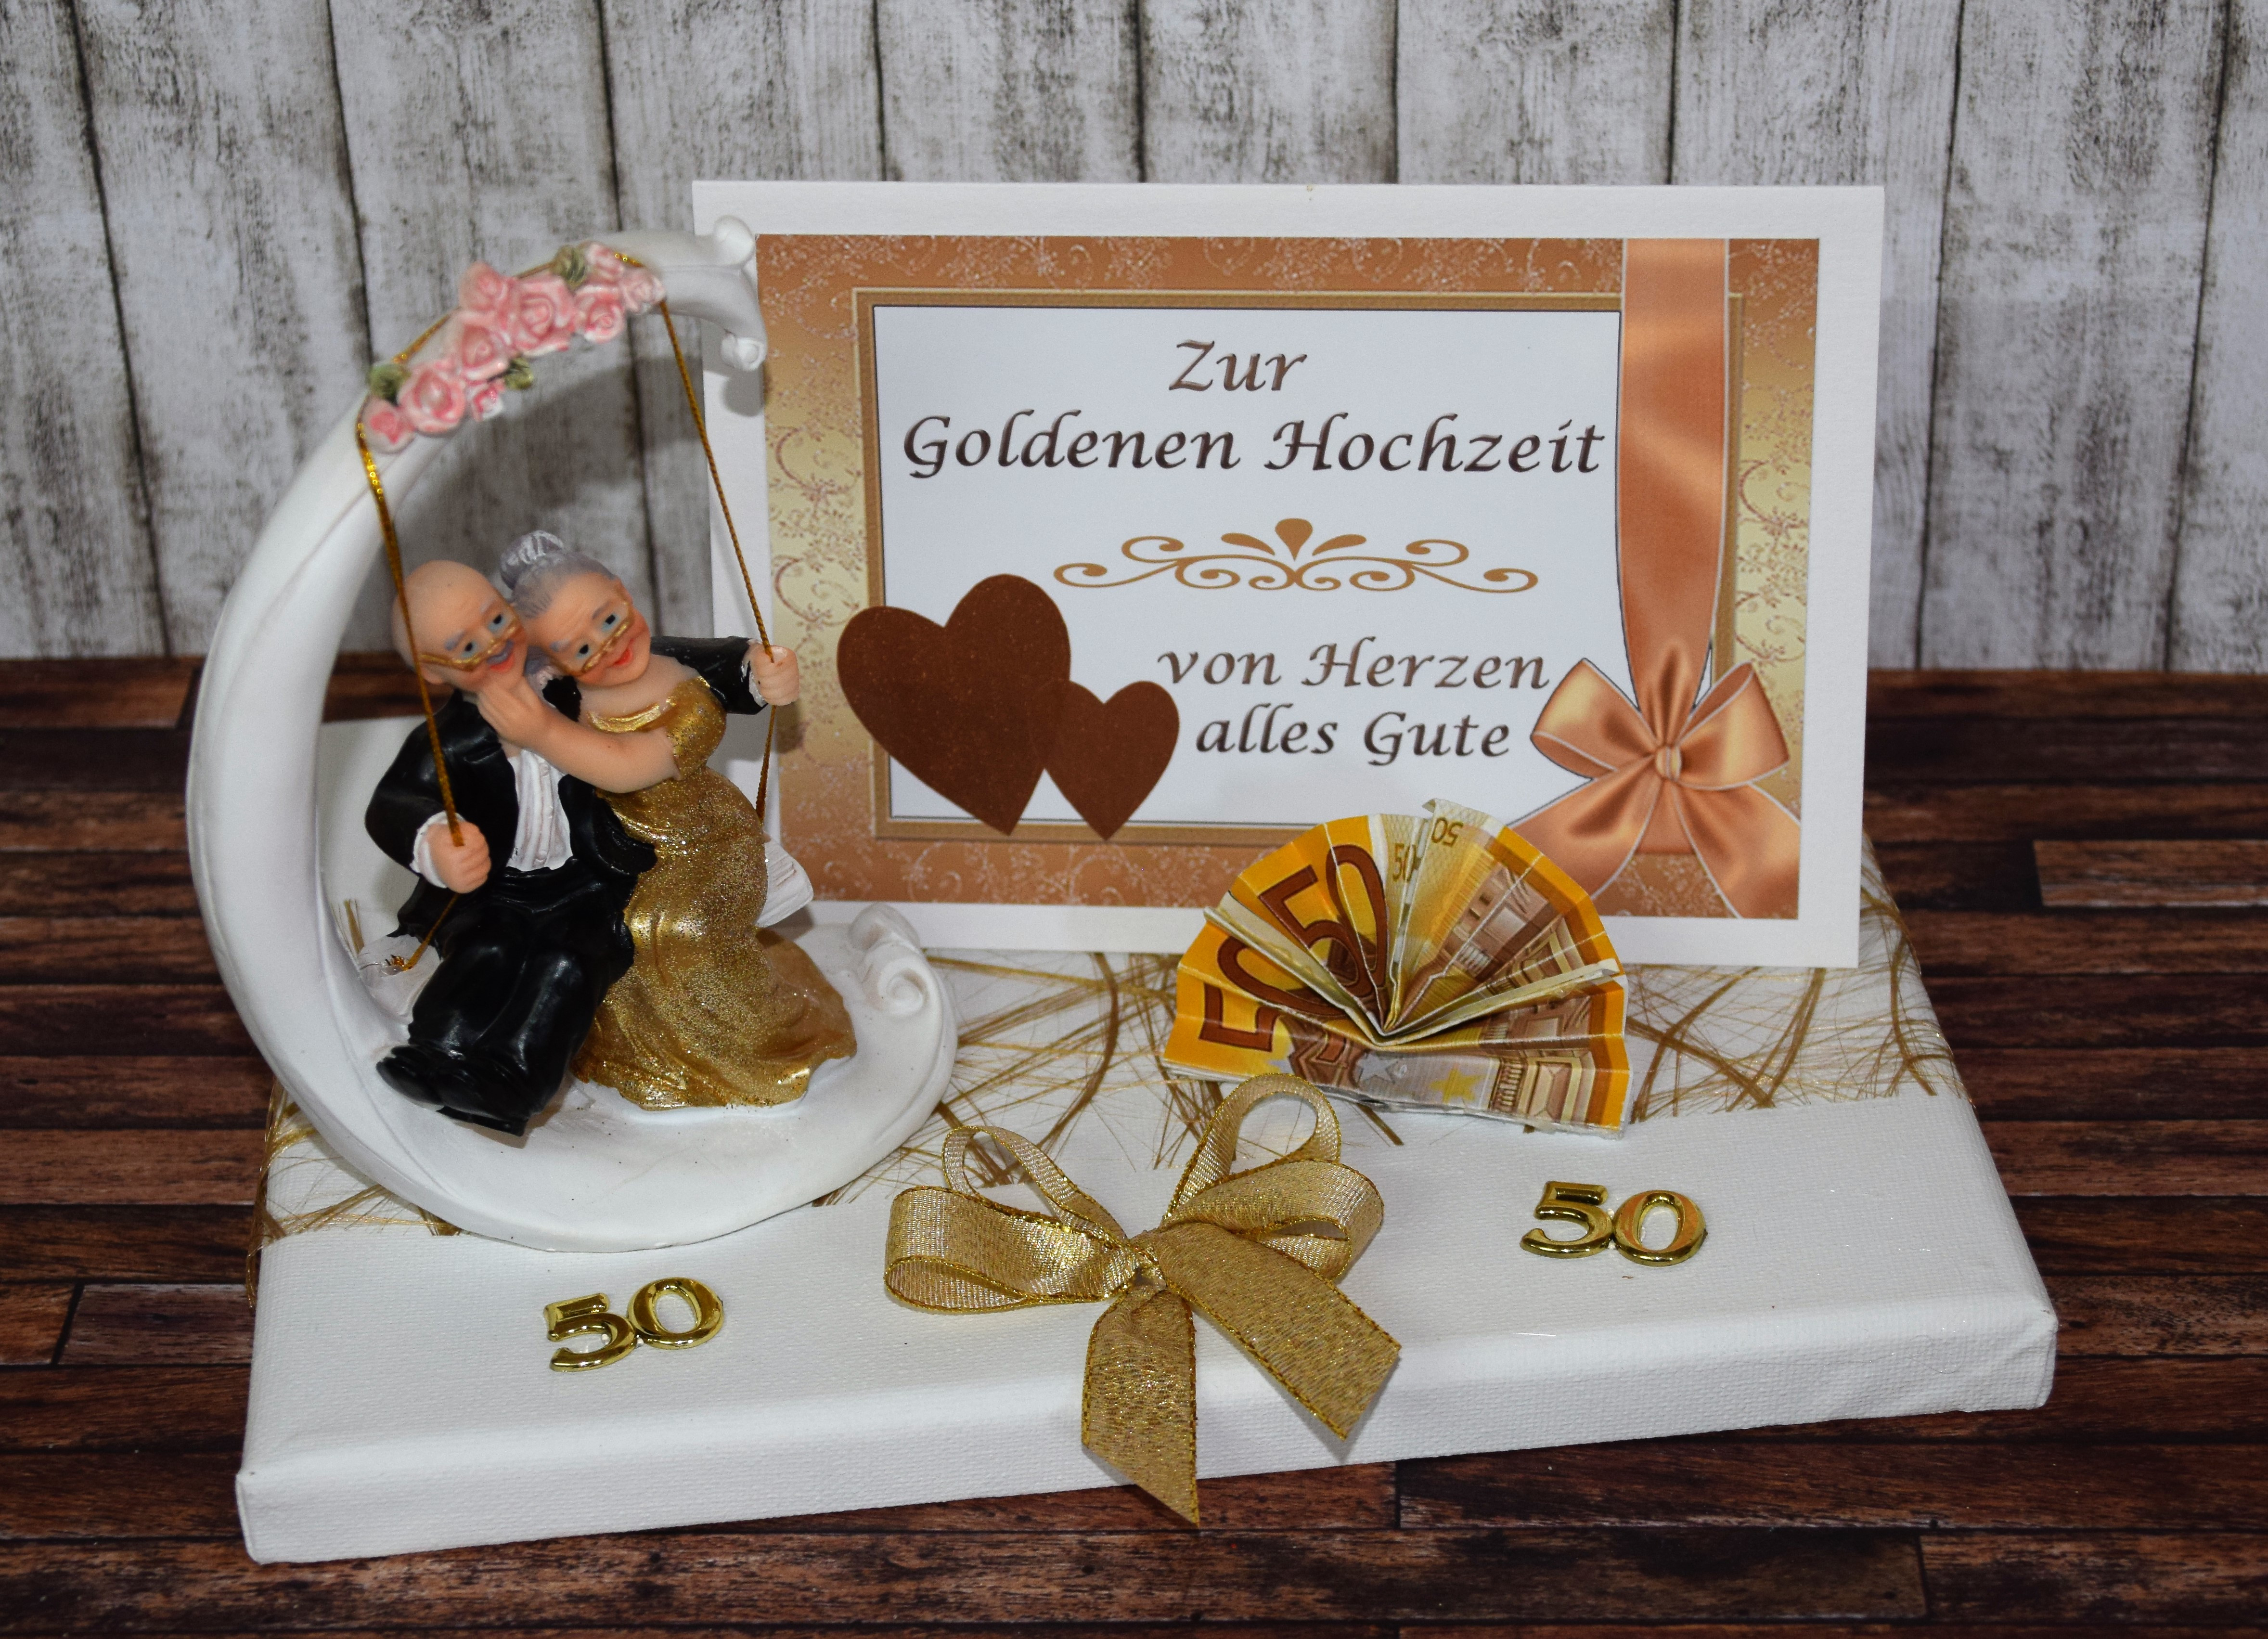 Geschenk Zur Goldenen Hochzeit
 Geld Geschenk zur goldenen Hochzeit mit Goldpaar auf Schaukel